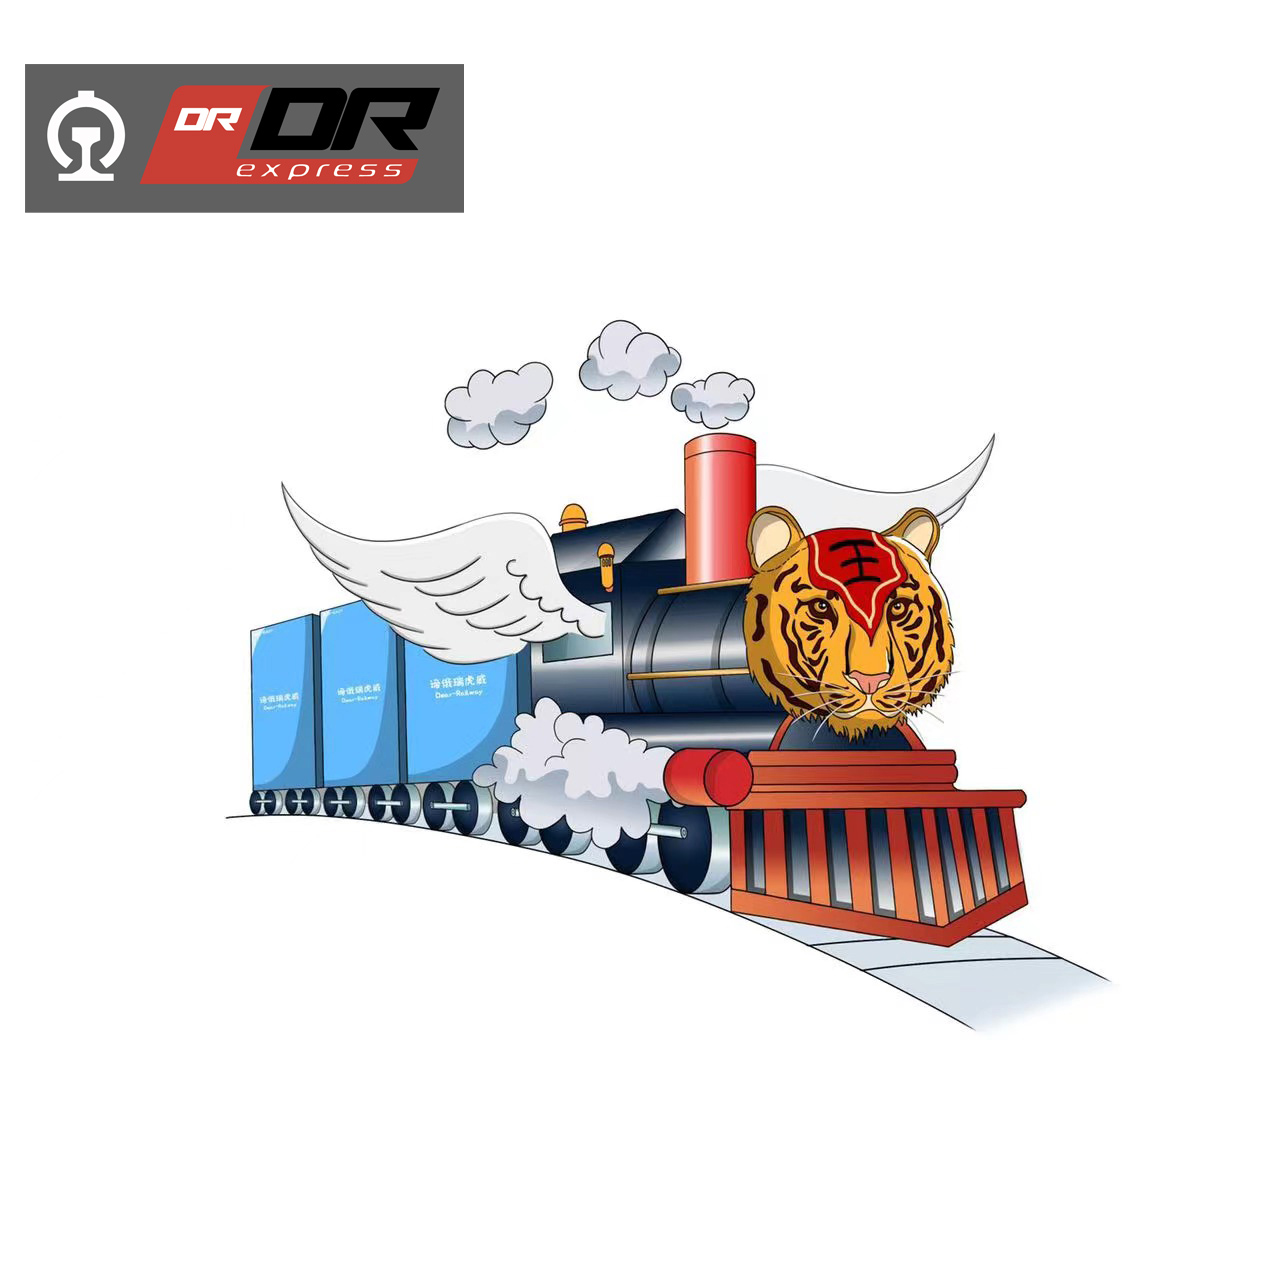 Перевозка генеральных грузов в картонной упаковке железнодорожным транспортом.